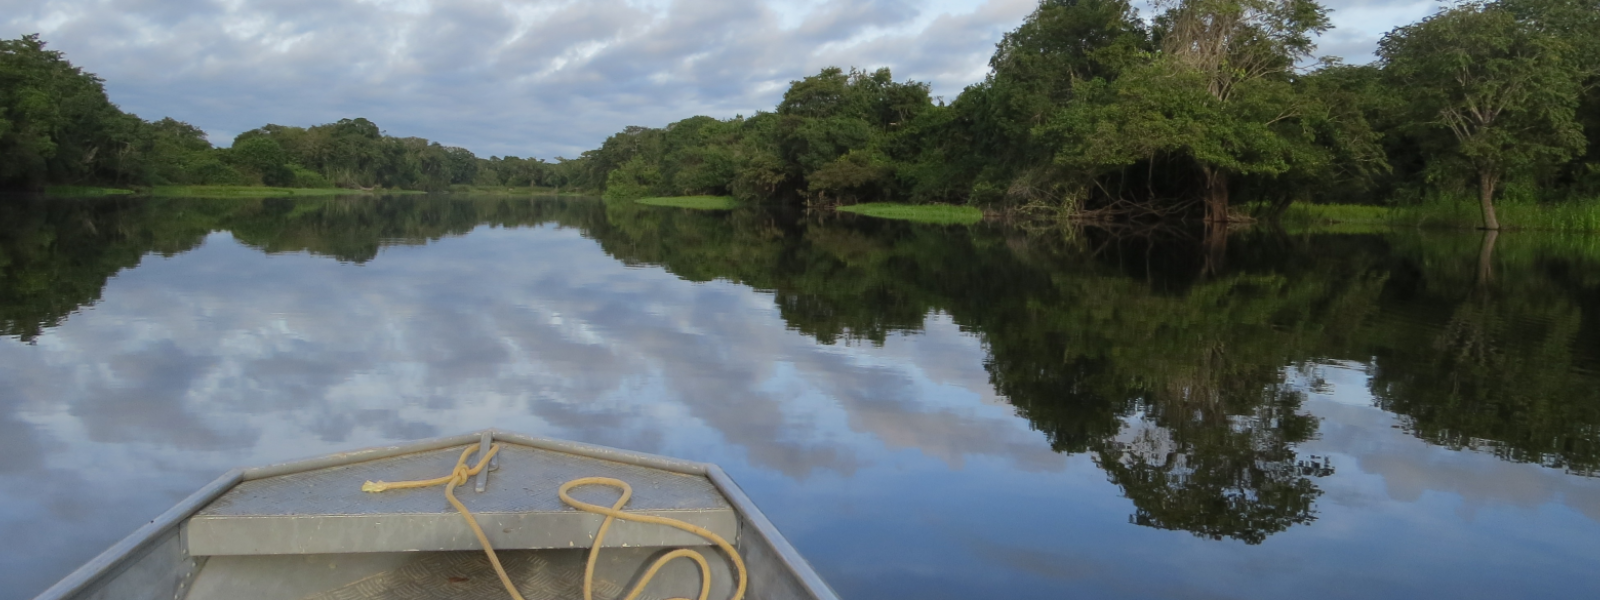 Río Guaporé, Amazonas